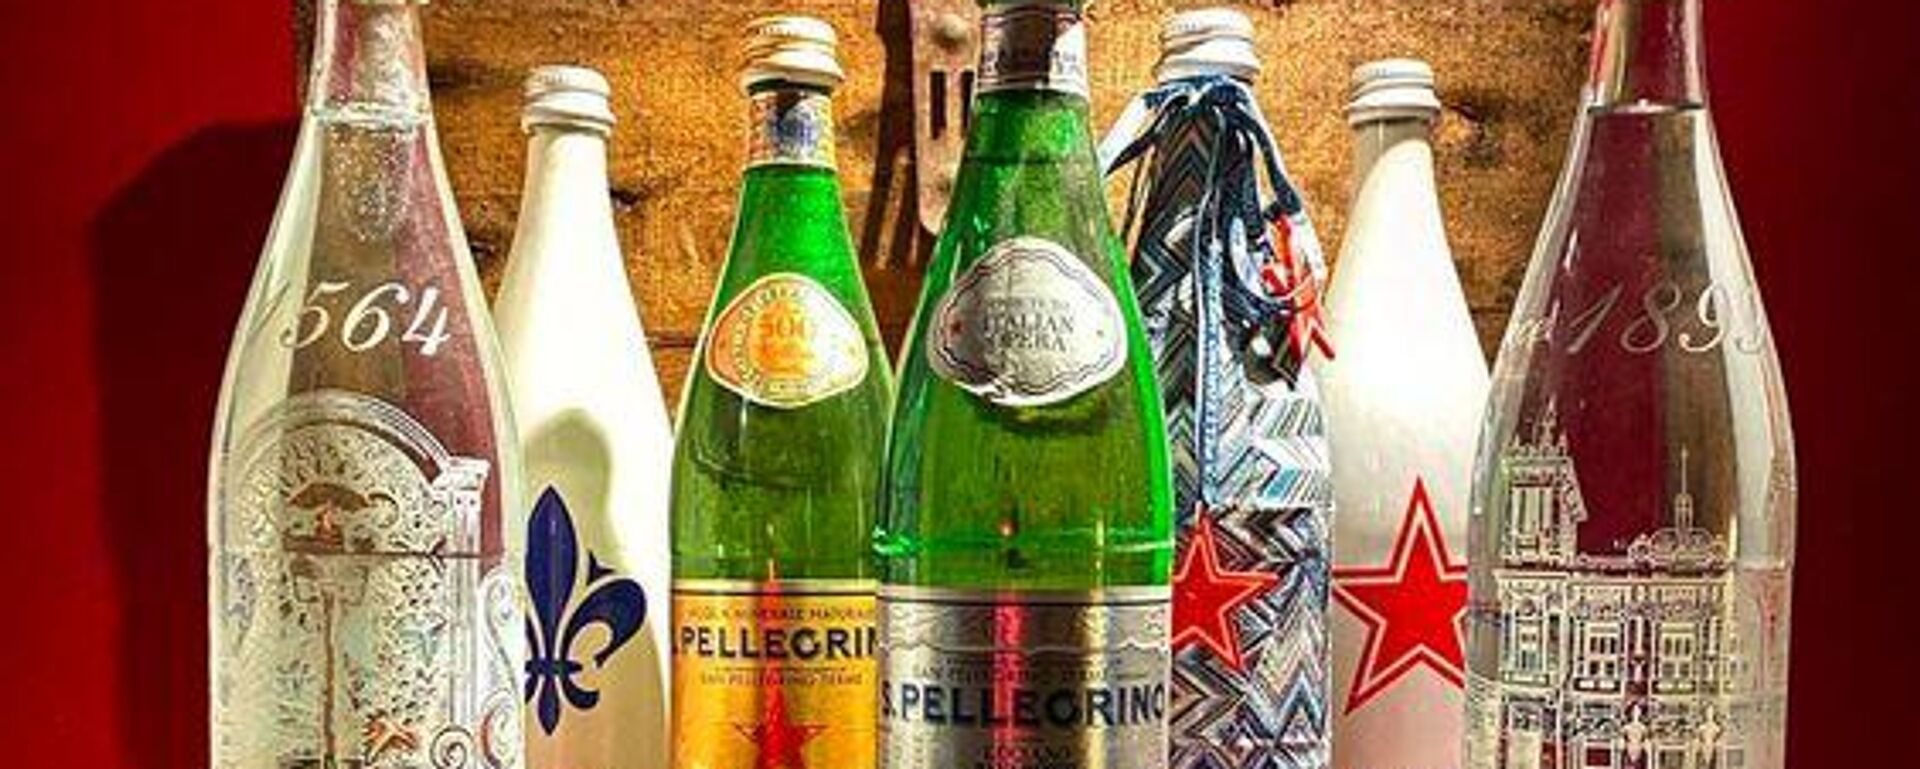 İtalyan maden suyu ve gazlı içecek markası Sanpellegrino'nun bazı ürünleri - Sputnik Türkiye, 1920, 27.07.2022